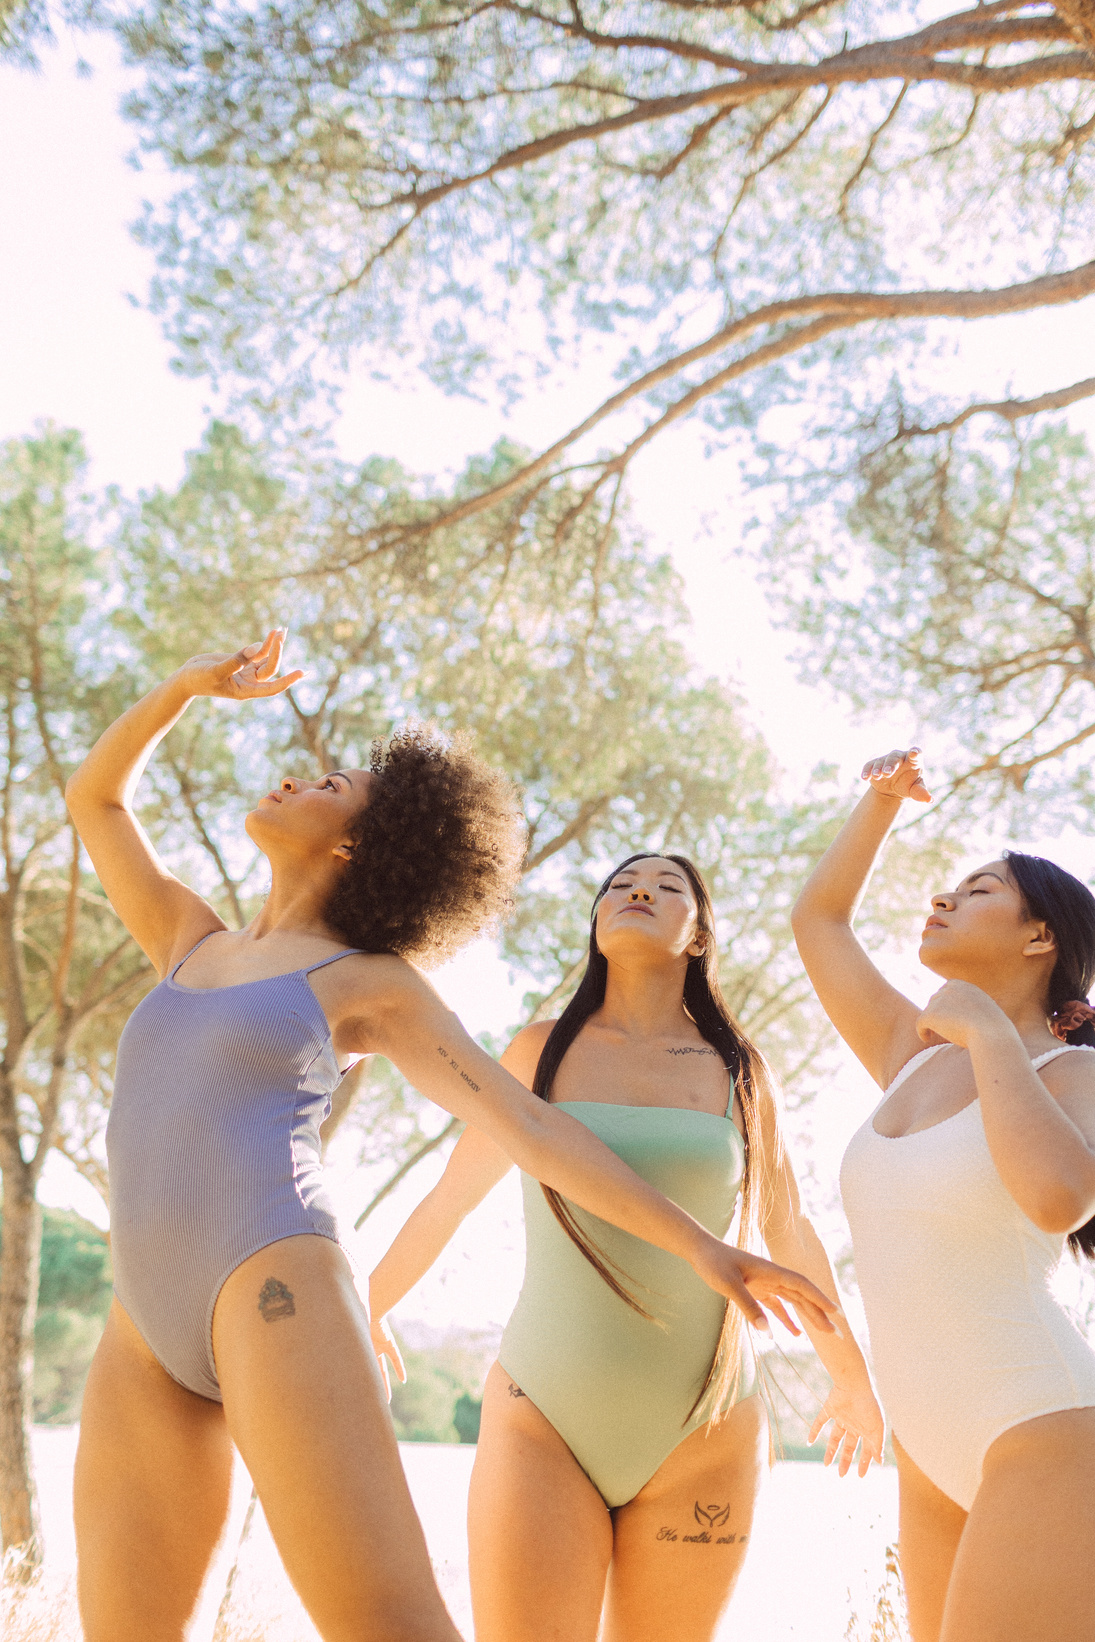 Three Diverse Women in Pastel Swimwear Outdoors